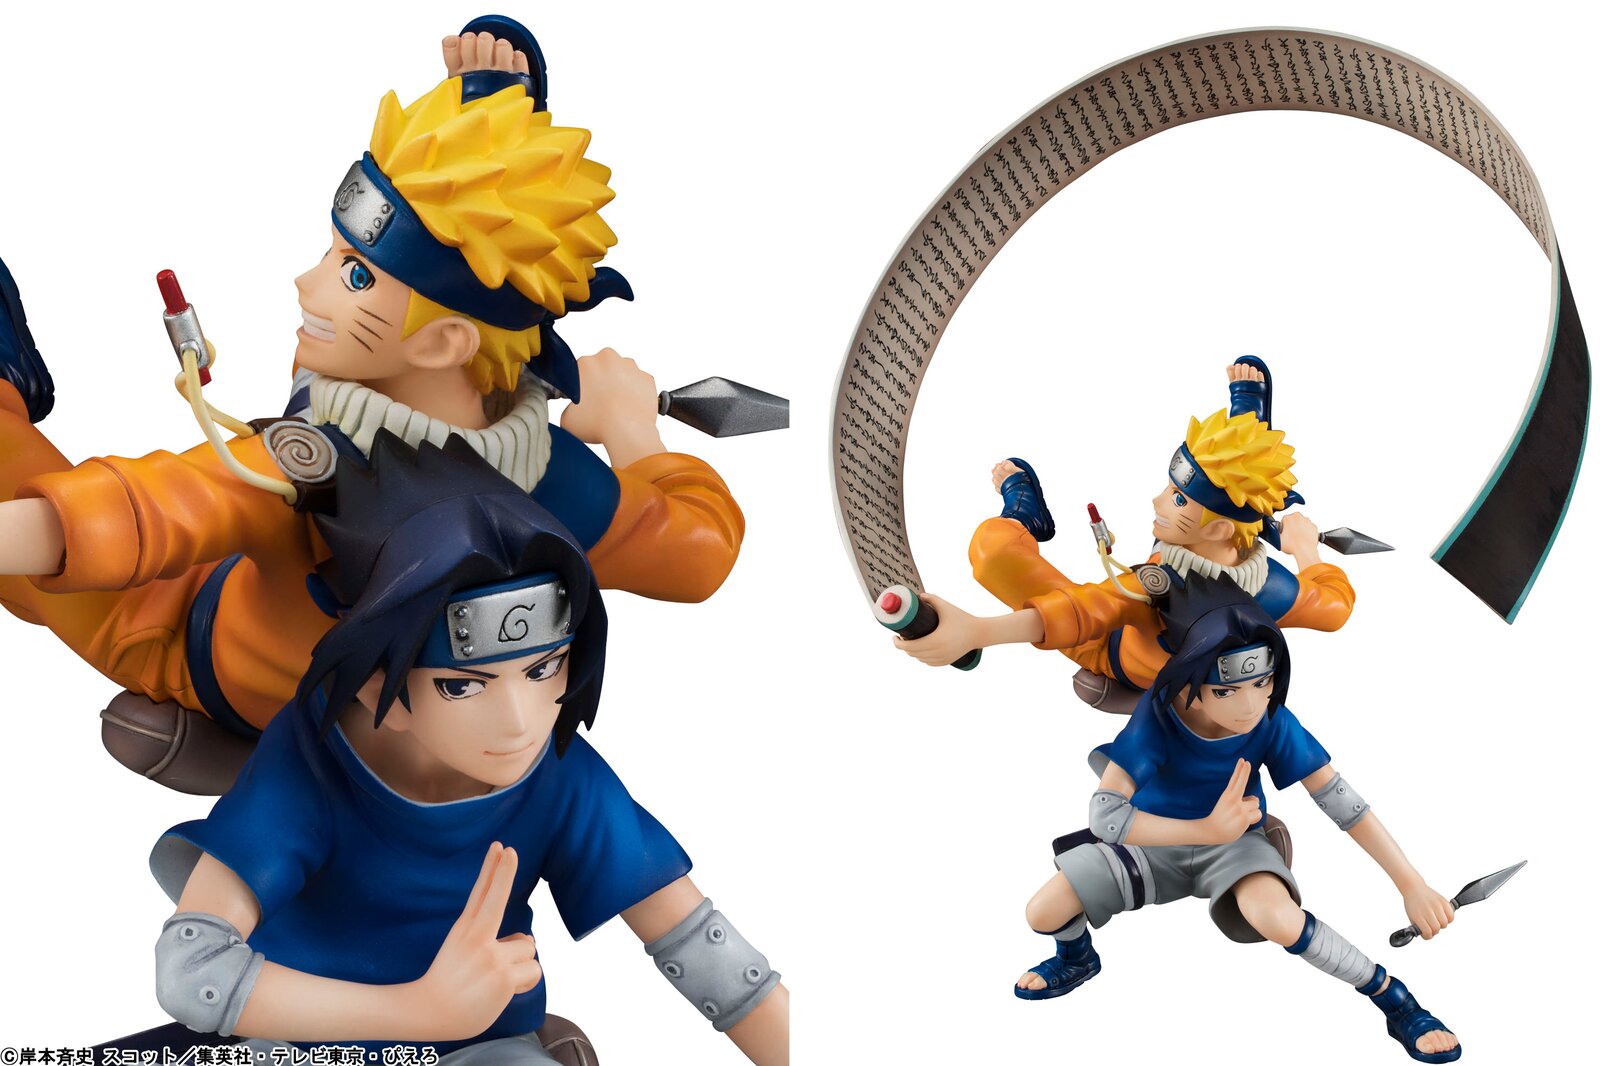 Naruto Shippuden: Season 17 Naruto Shippuden, Sasuke's Story